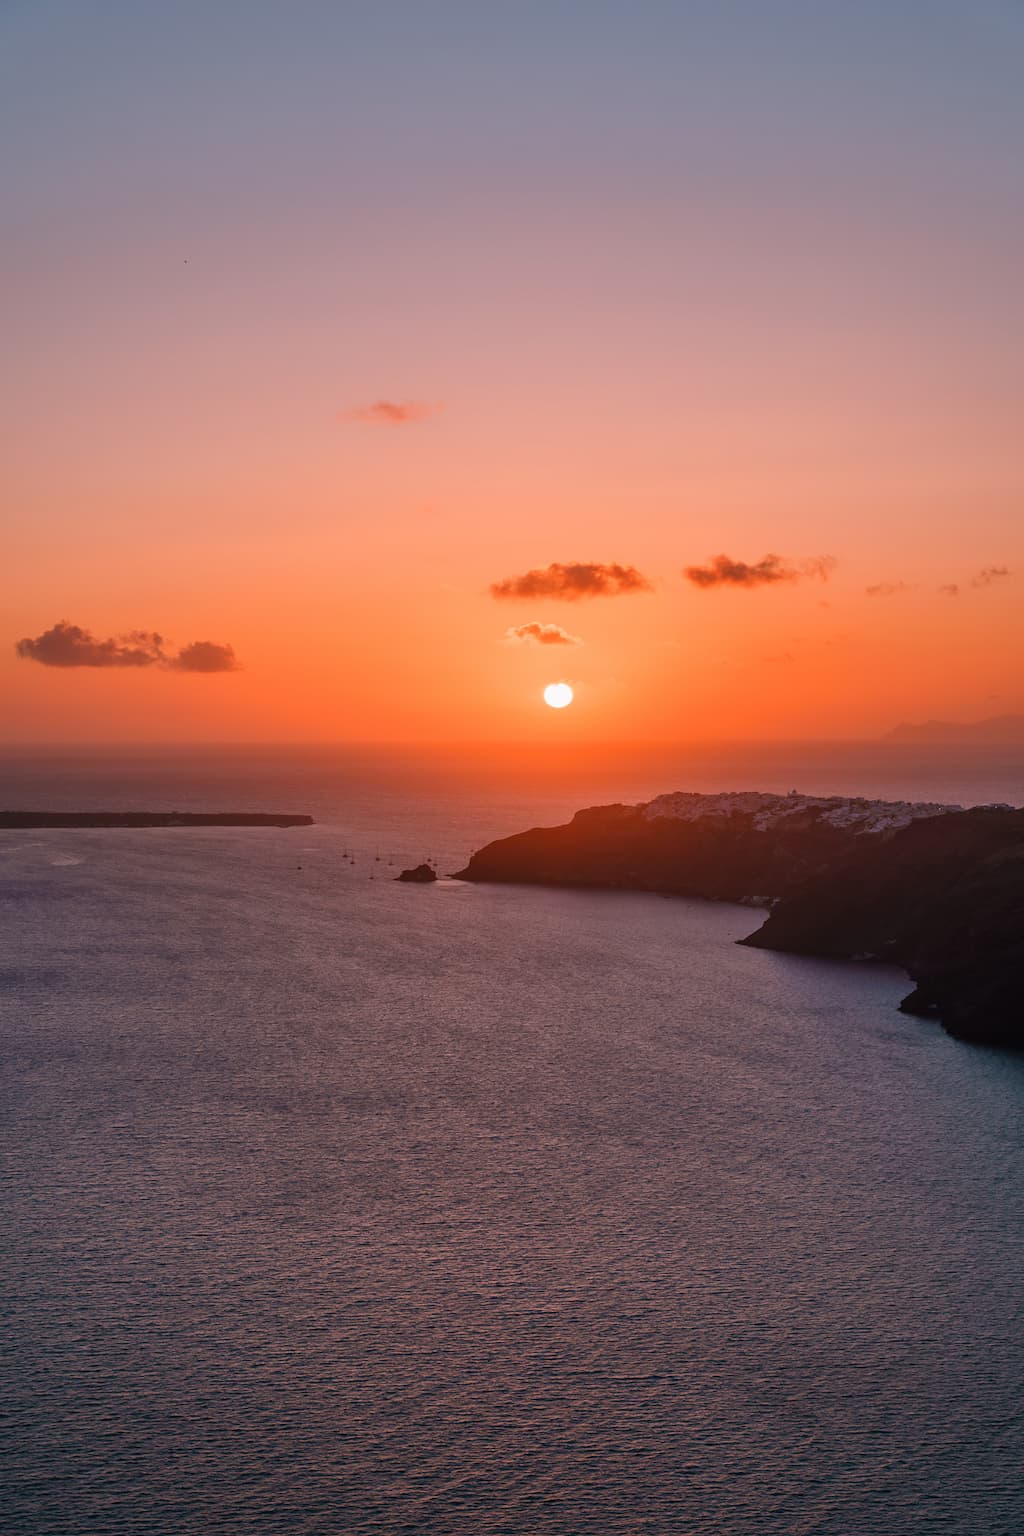 Santorini sunset cruise. 